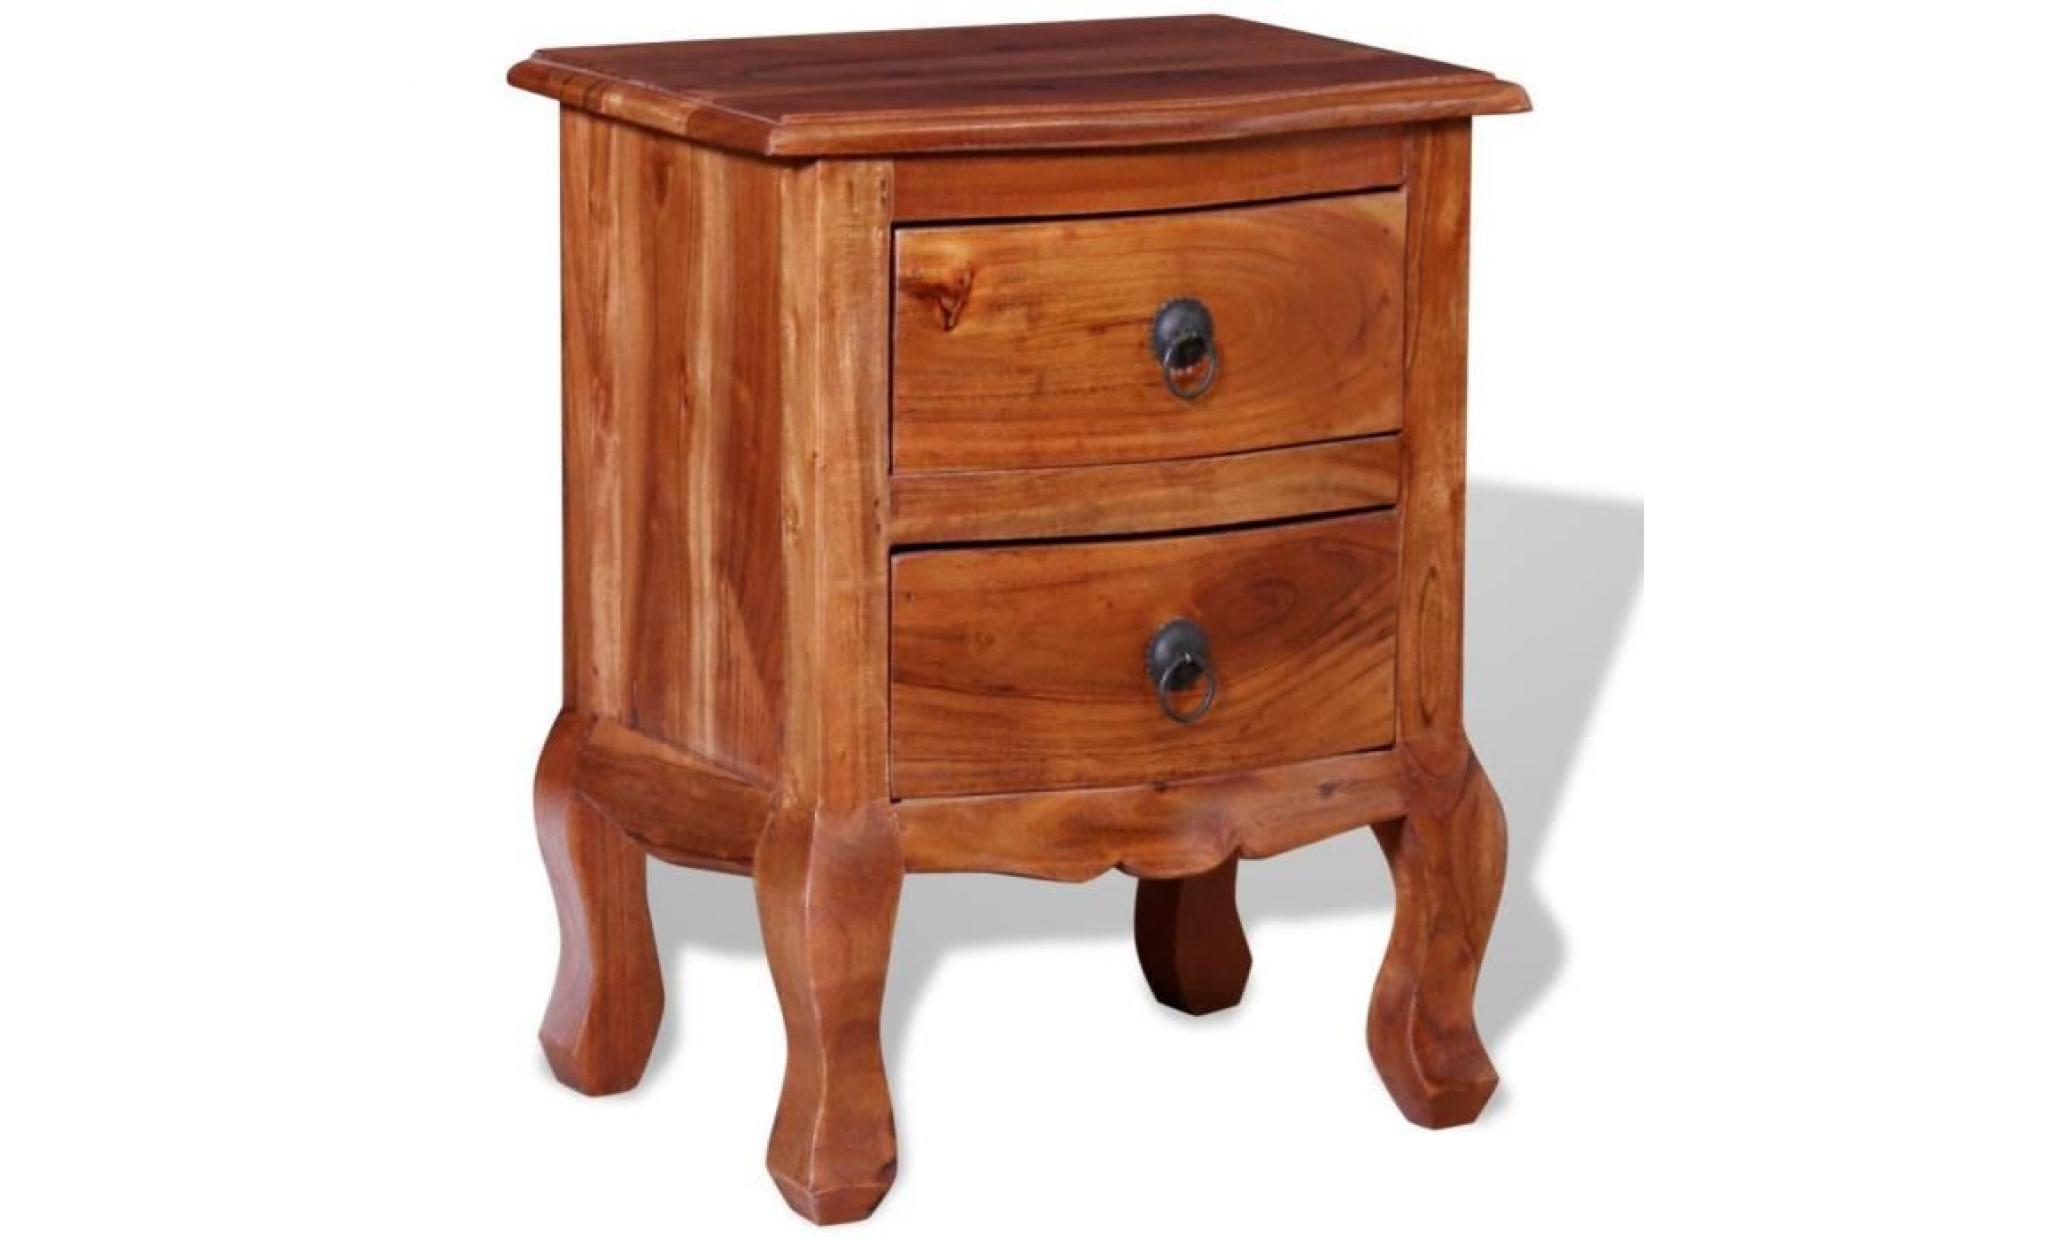 table de chevet en bois d'acacia massif avec un vernis mat ajoutera une touche de charme vintage à votre décor. la table de chevet pas cher